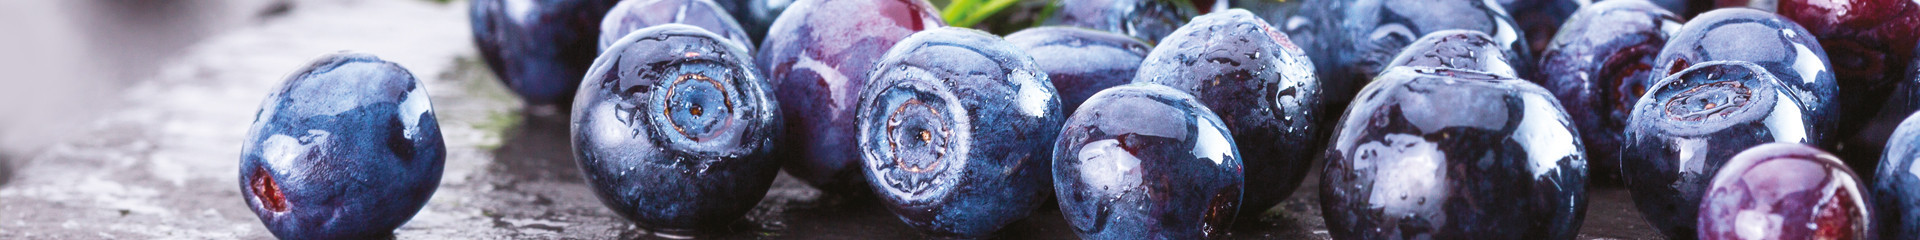 Baie d’açaï bio : un fruit brésilien riche en antioxydants | Bioénergies